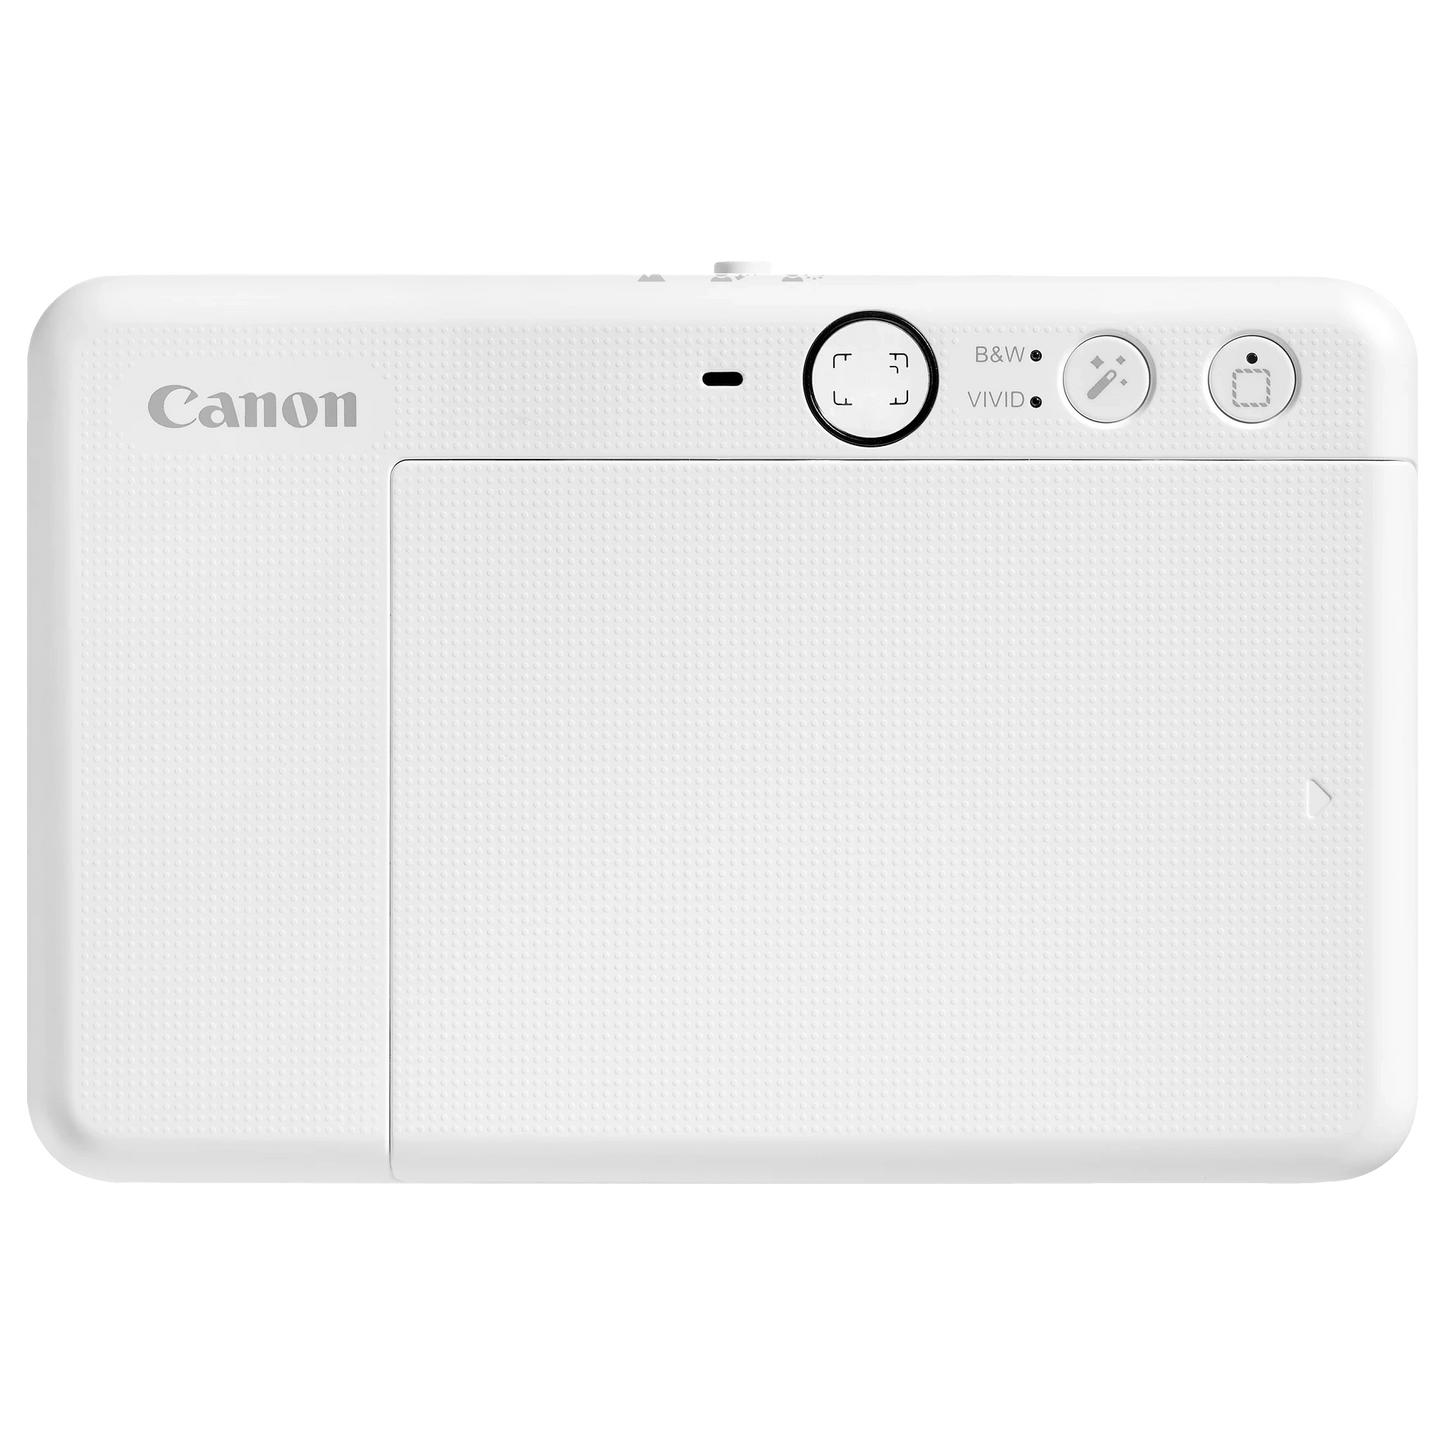 Canon Zoemini S2 instant Camera Printer